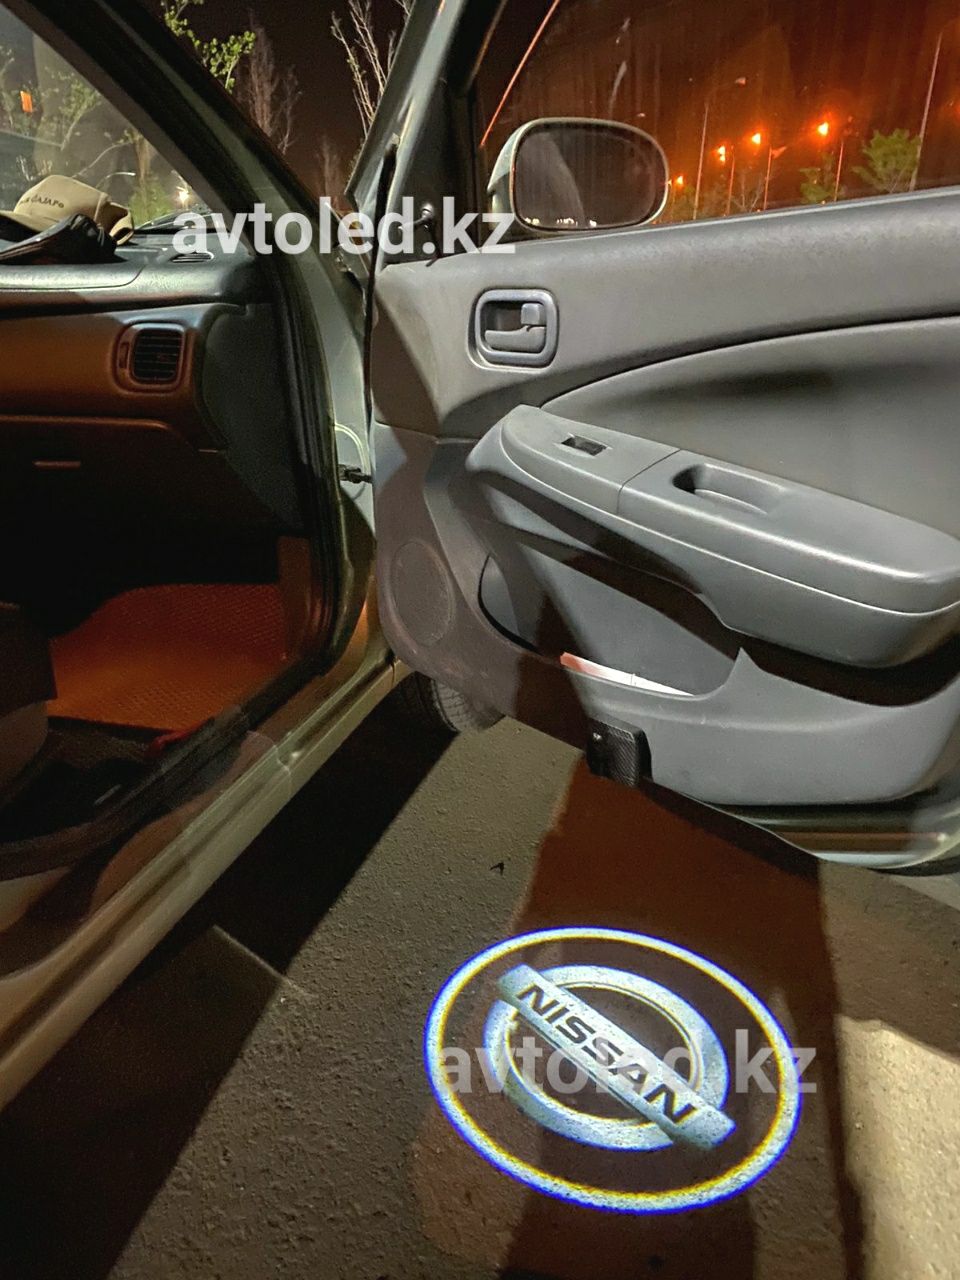 Ниссан Мурано подсветка дверей с лого тюнинг авто Led подарок мужчине